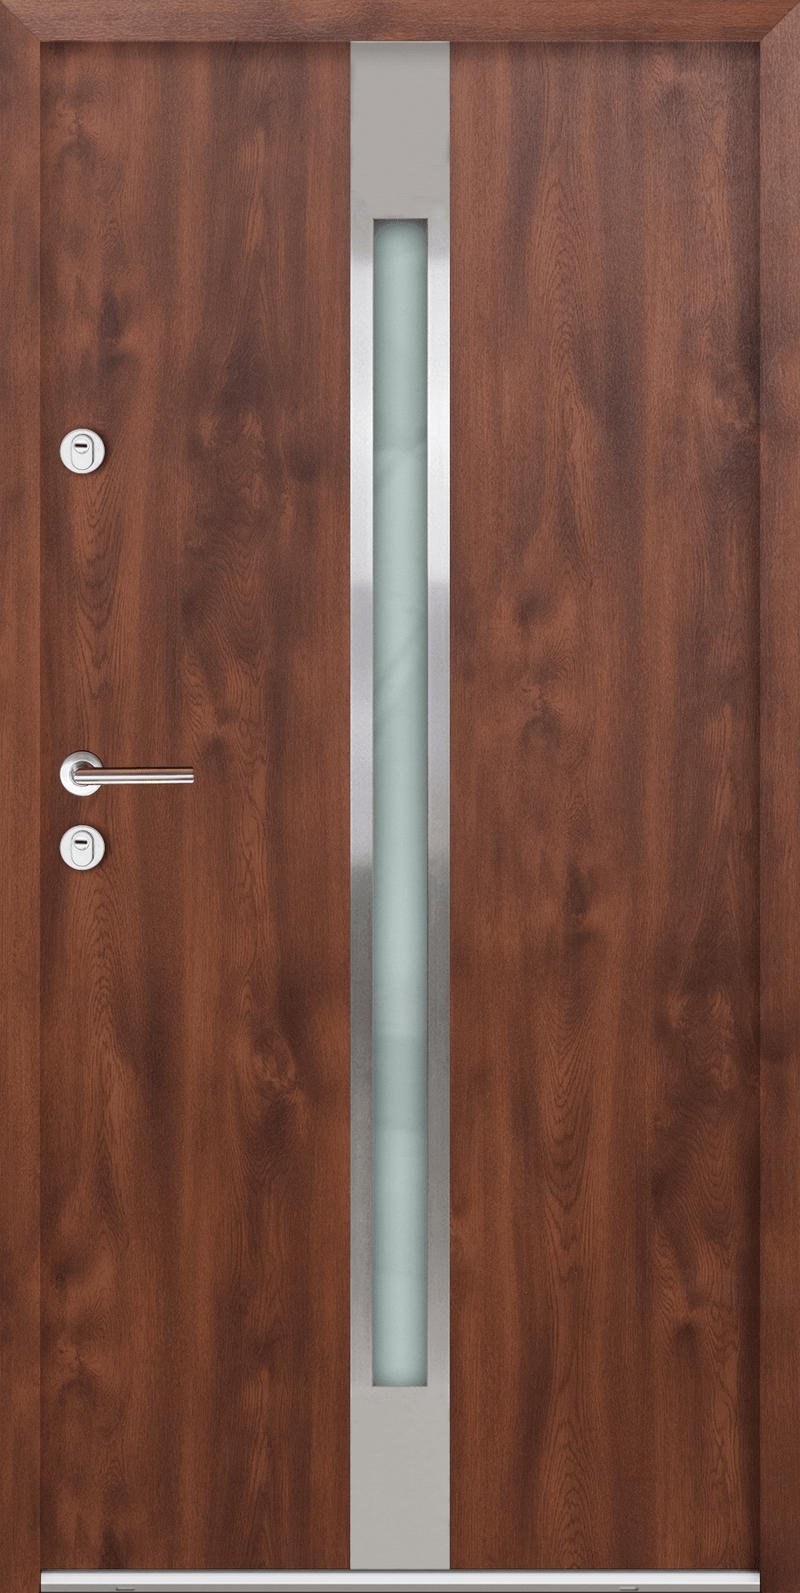 Turenwerke ATU 68 Design 505 Steel Door - Walnut